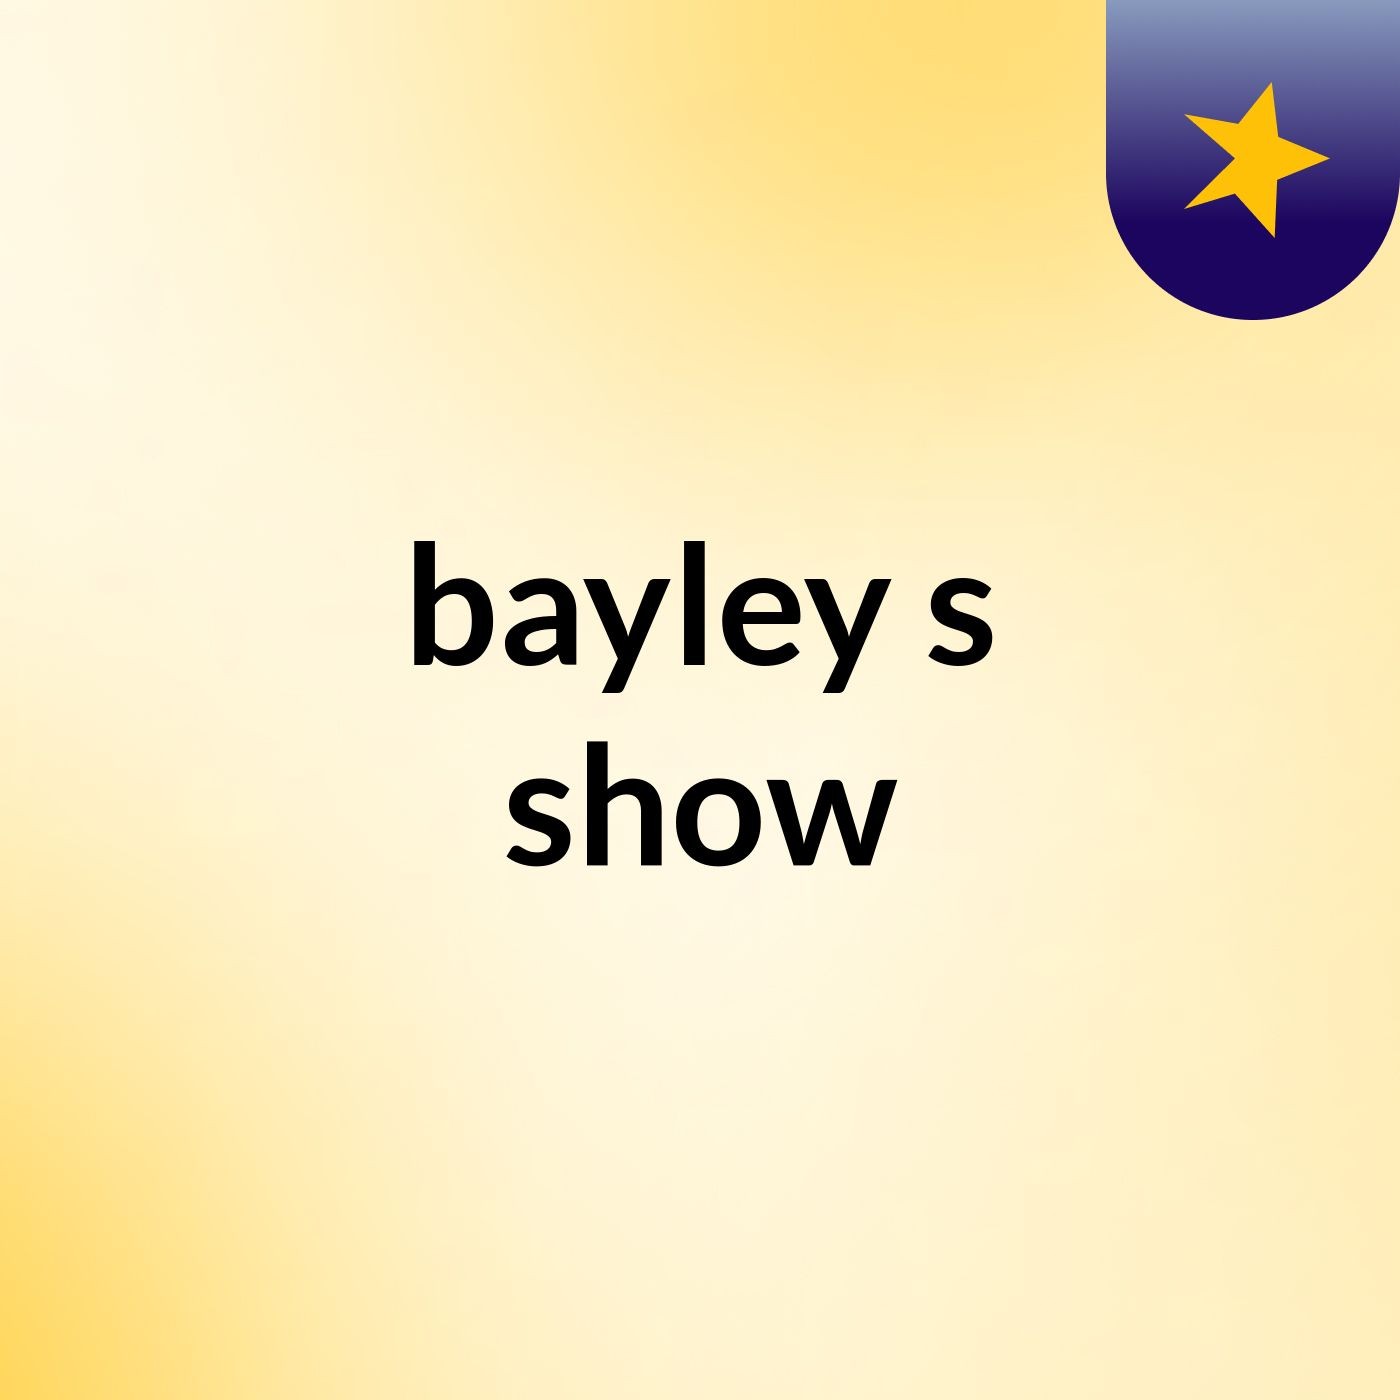 bayley's show